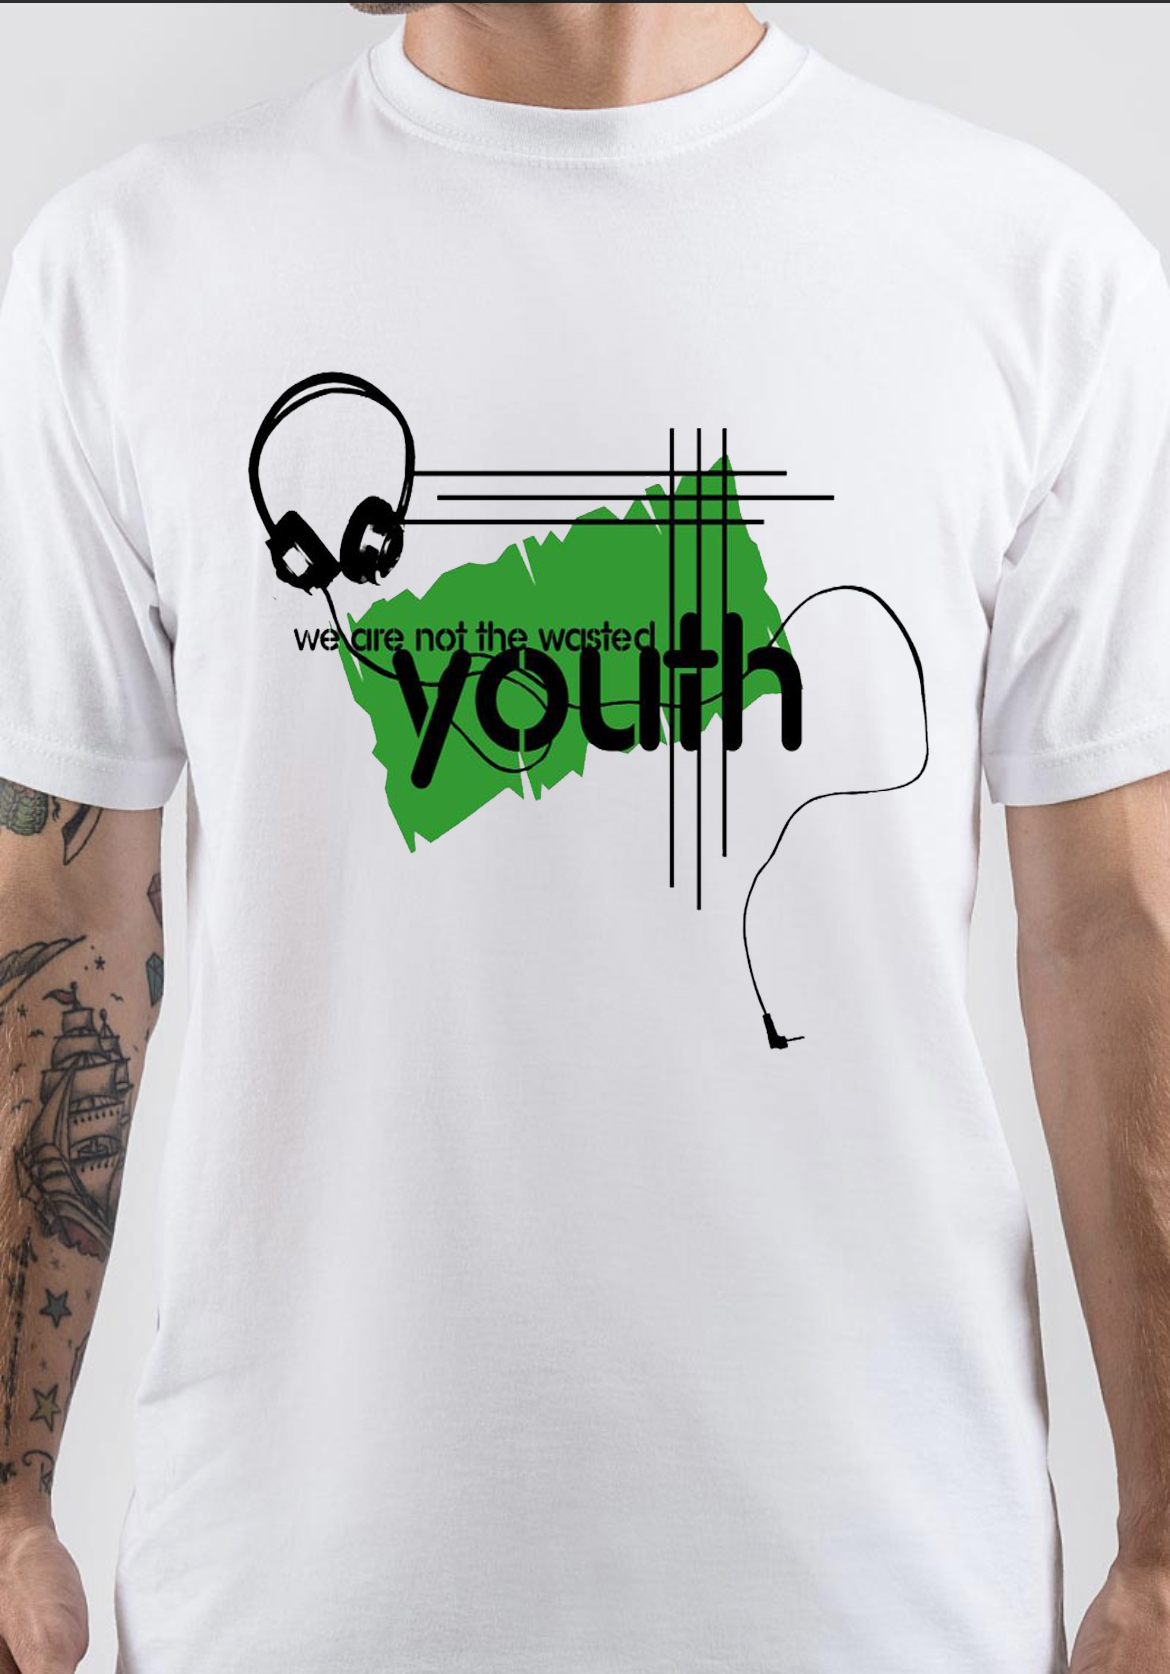 Wasted Youth T-Shirt | Swag Shirts